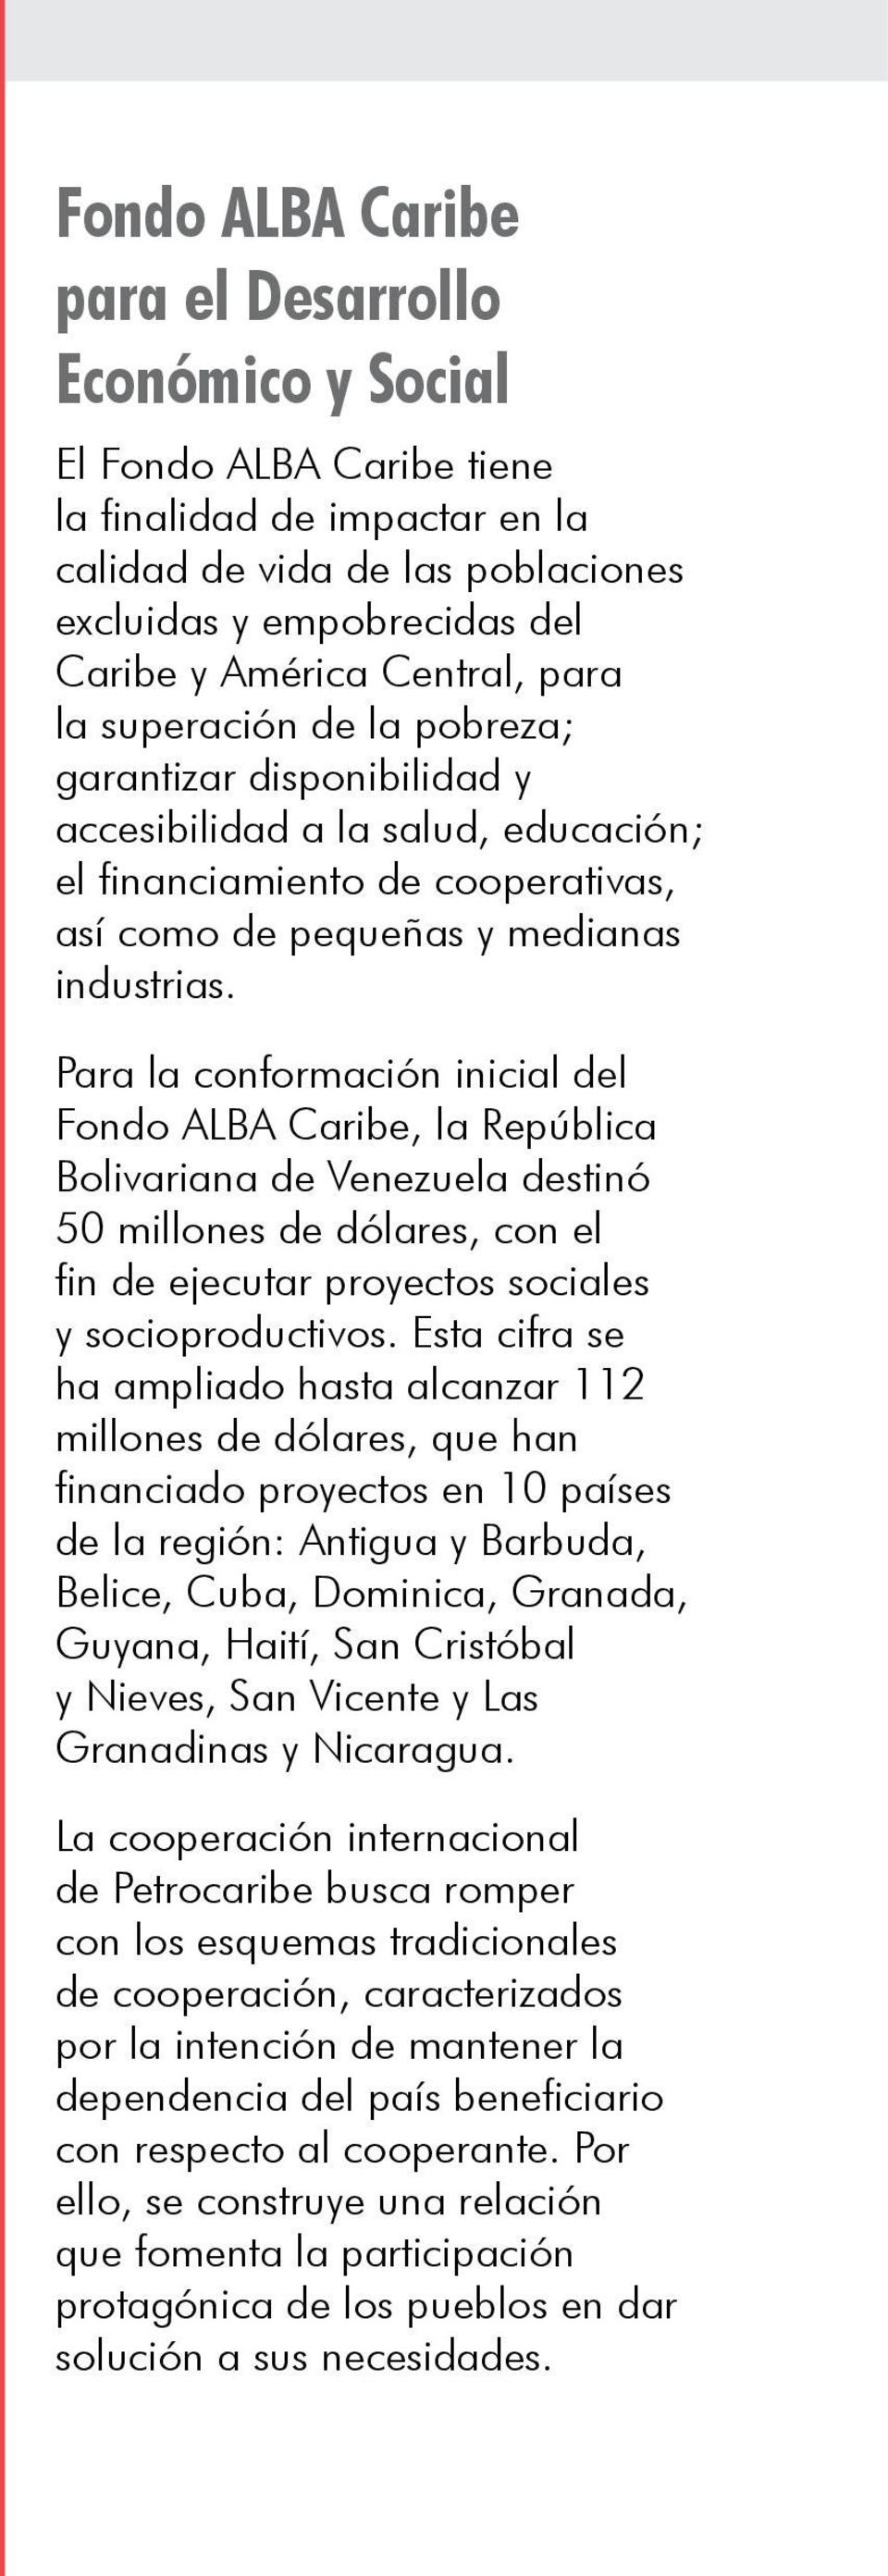 Para la conformación inicial del Fondo ALBA Caribe, la República Bolivariana de Venezuela destinó 50 millones de dólares, con el fin de ejecutar proyectos sociales y socioproductivos.